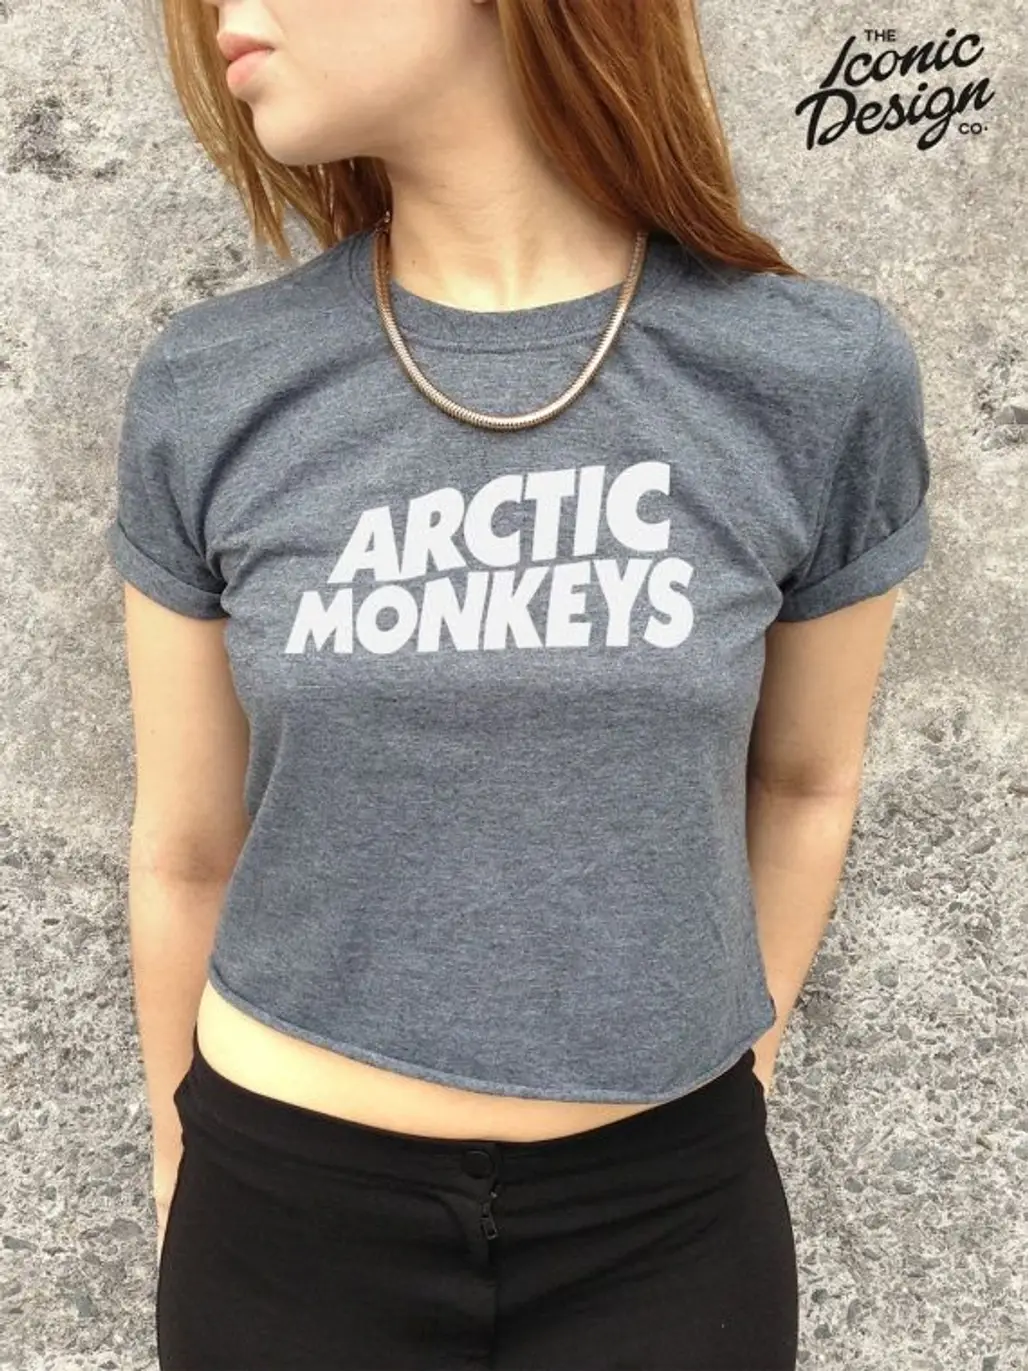 Arctic Monkeys Crop Top Tank